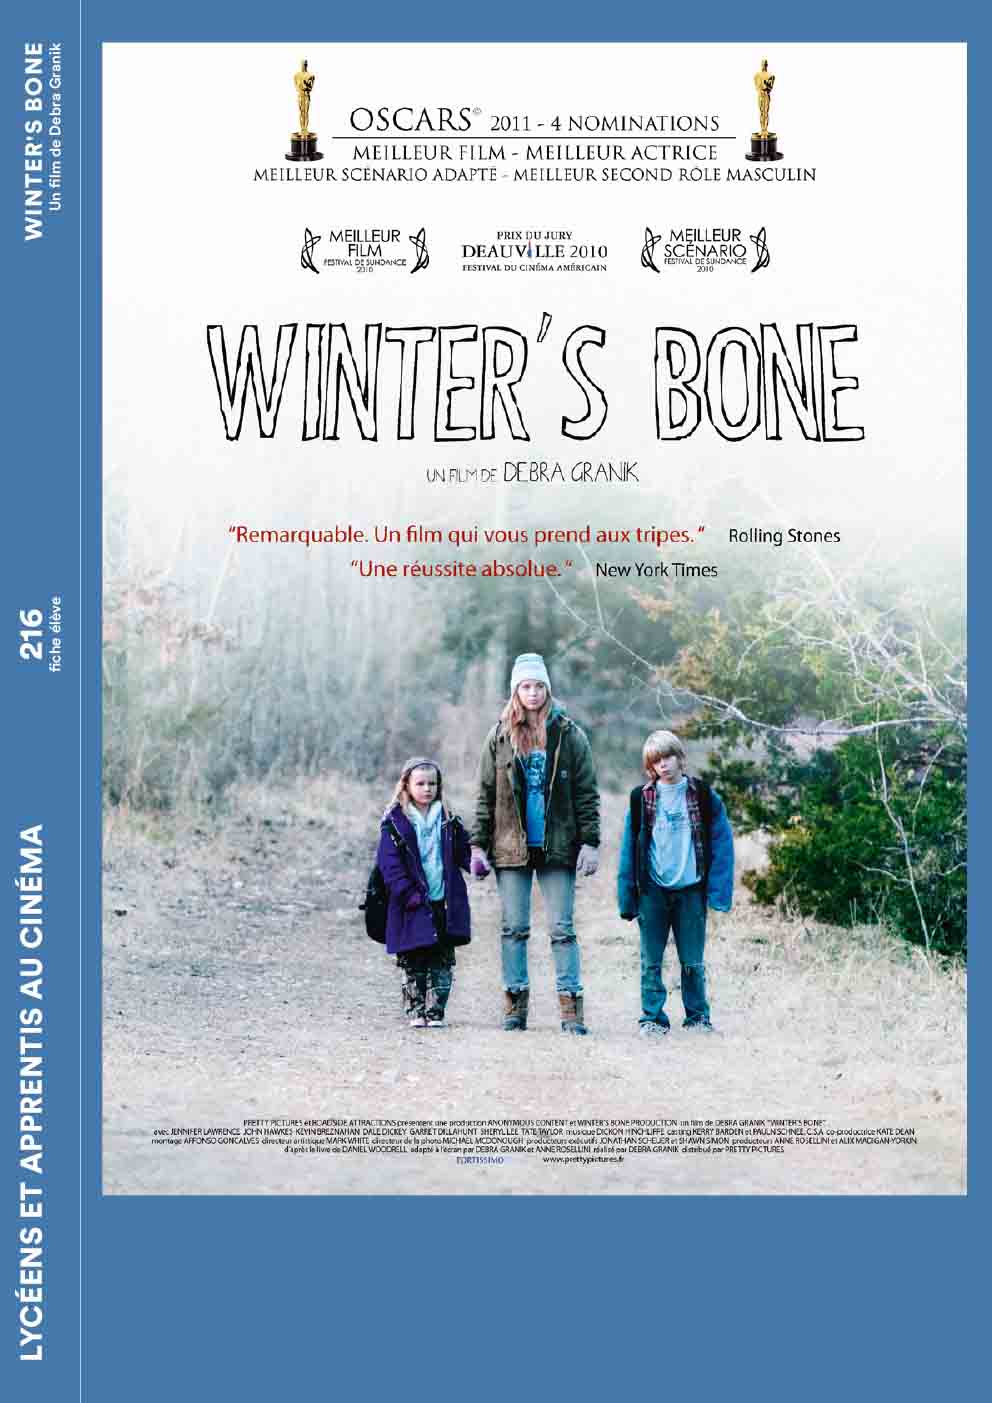  Couverture de la fiche élève du film Winter's Bone de Debra Granik